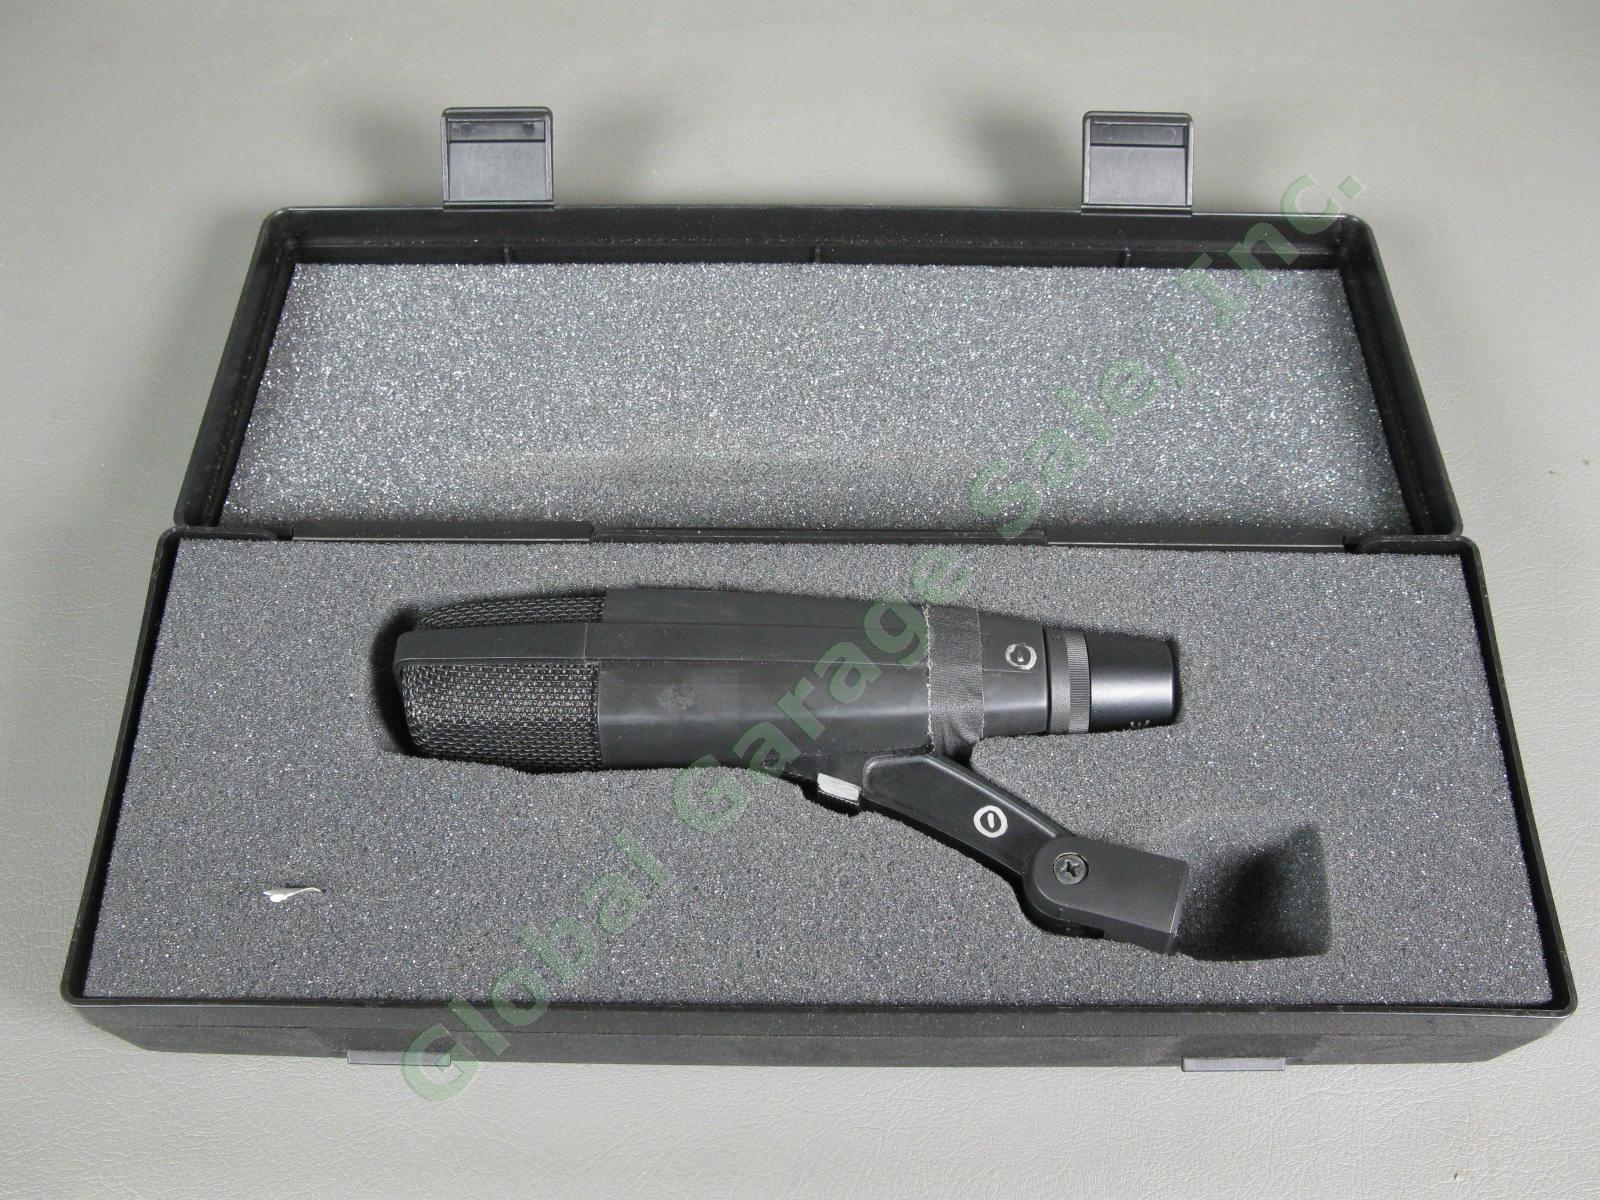 Sennheiser MD 421 II Dynamic Cardioid Professional Microphone Black Pro Mic NR